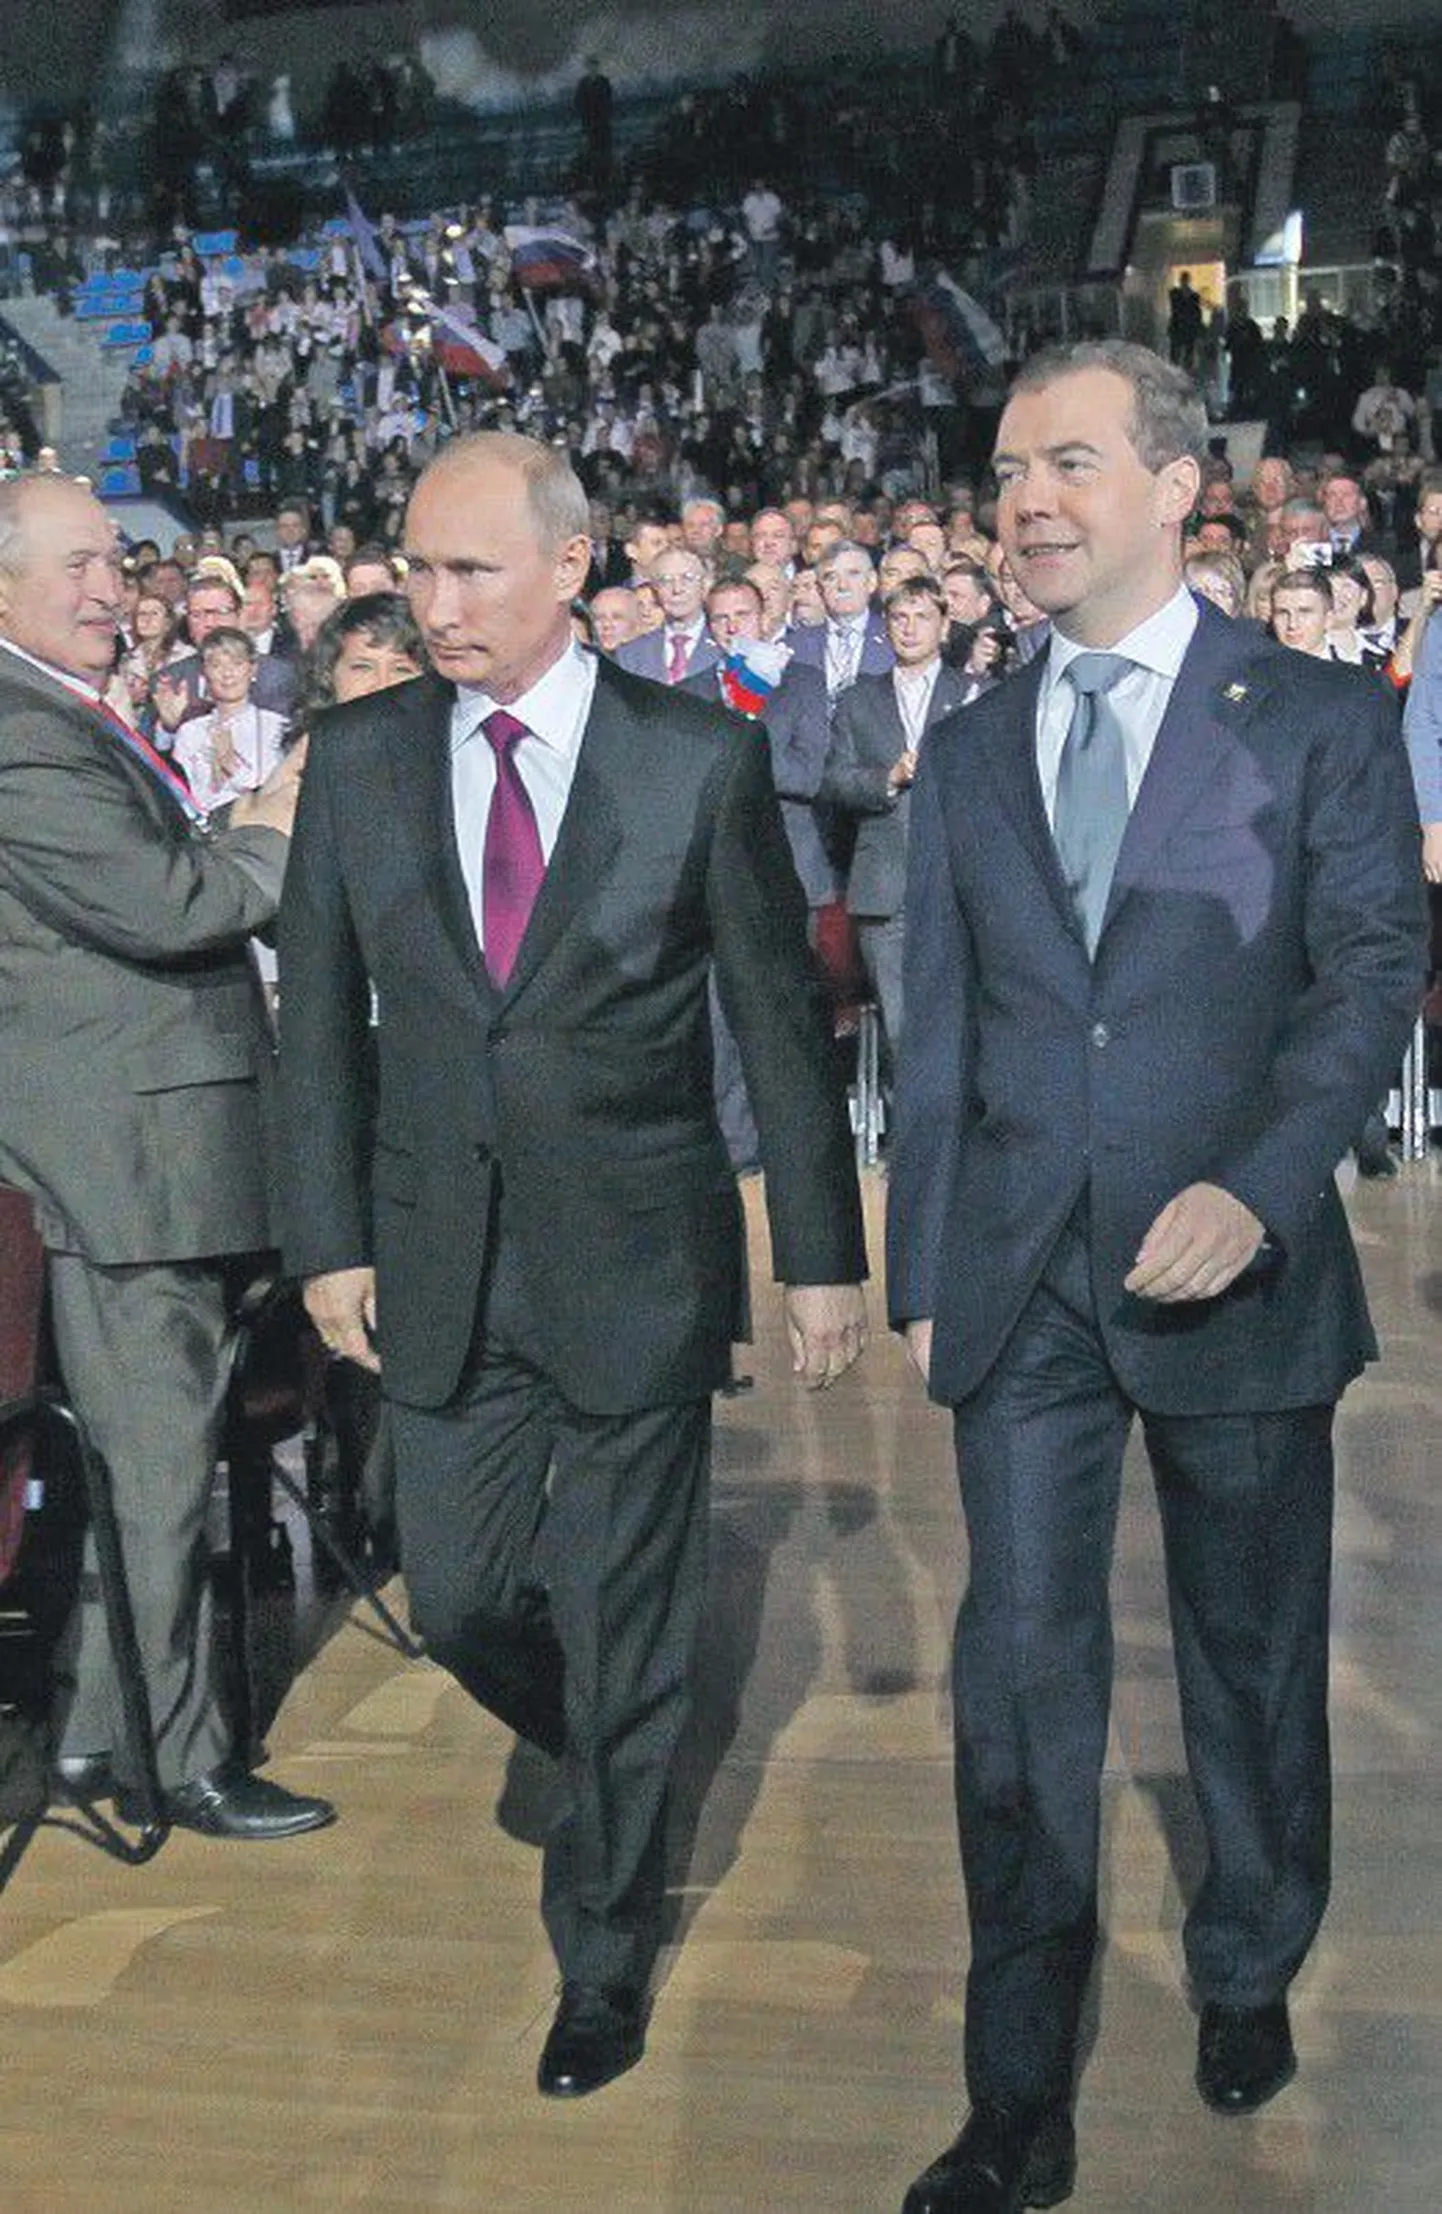 Владимир Путин и Дмитрий Медведев (справа) на съезде "Единой России", где было объявлено, что в президенты от партии будет баллотироваться Путин.